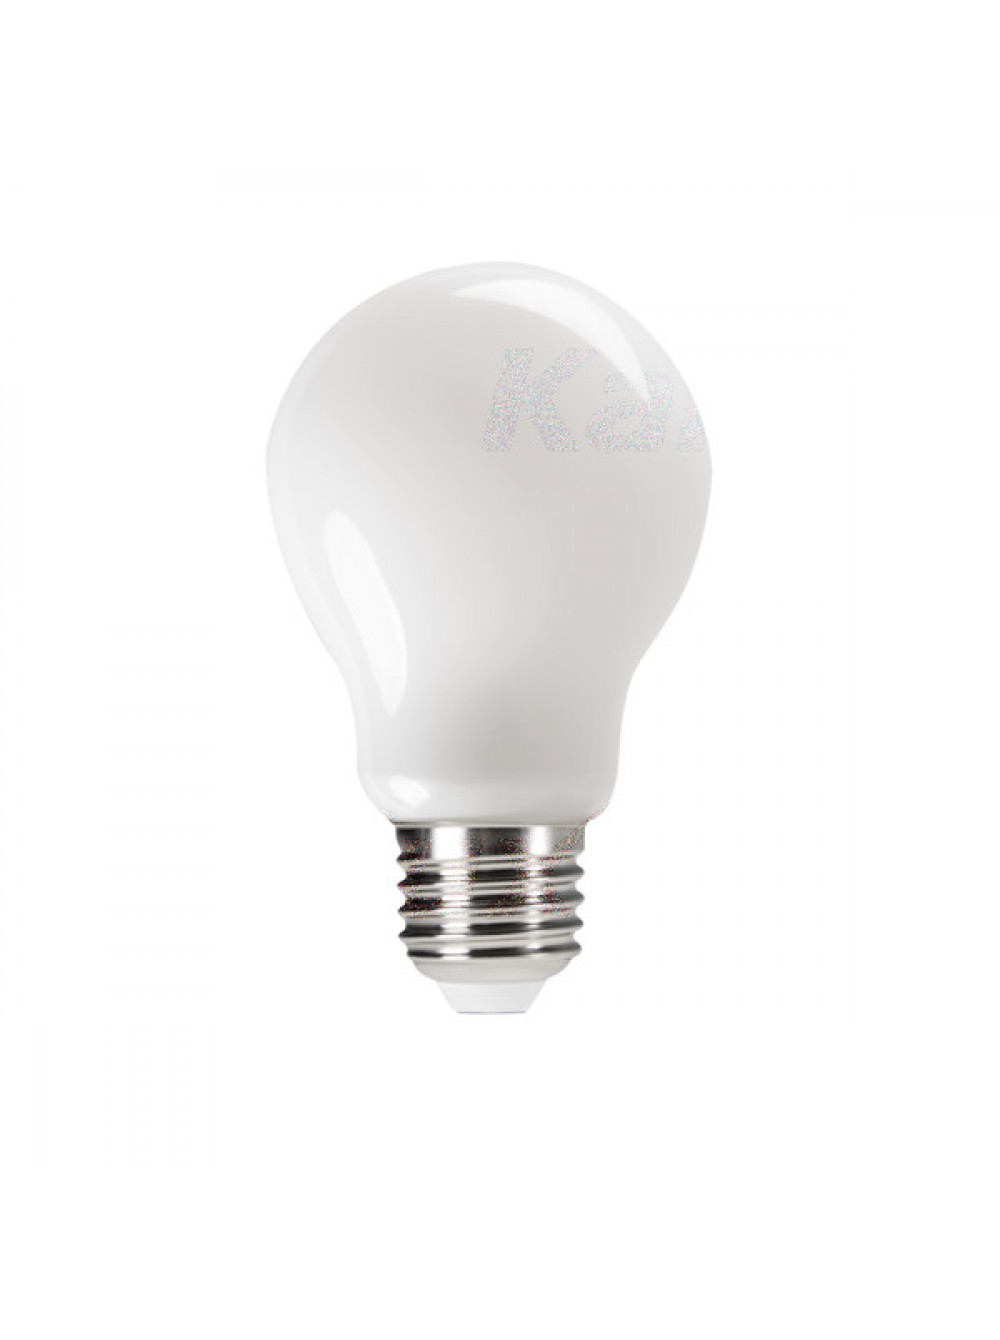 90198412 Лампа светодиодная E27 220-240 Вт 10 Вт груша теплый белый свет STLM-0129870 KANLUX